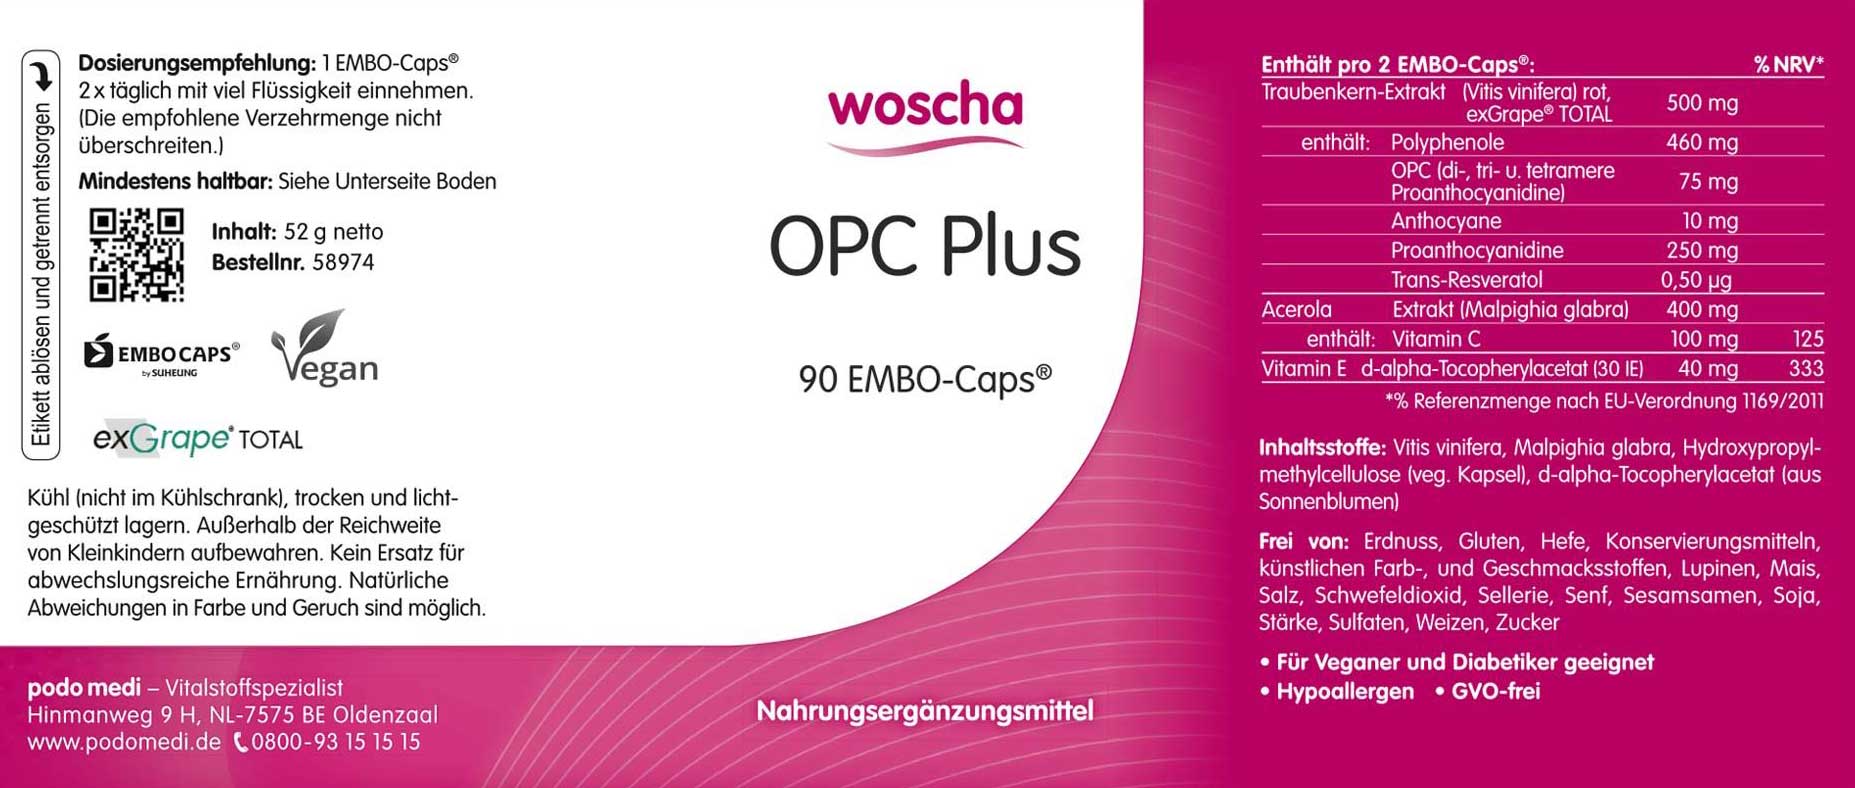 Woscha OPC Plus von podo medi beinhaltet 90 Kapseln Etikett